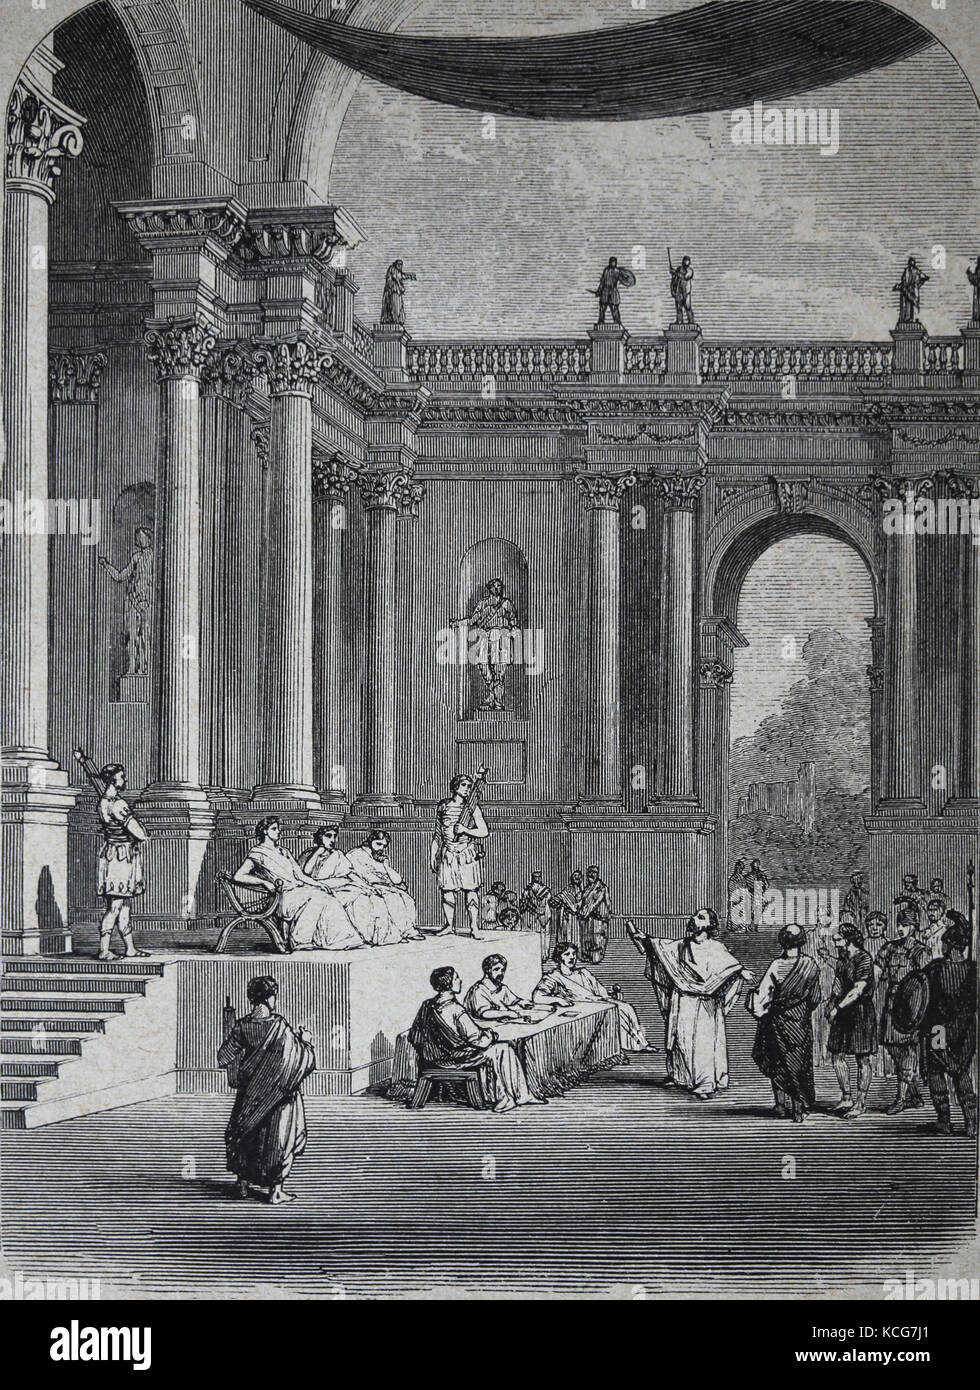 Roman Praetorium or Palace of Pontius Pilates, Roman prefect of Judea, Jerusalem. Engraving, 1890. Stock Photo